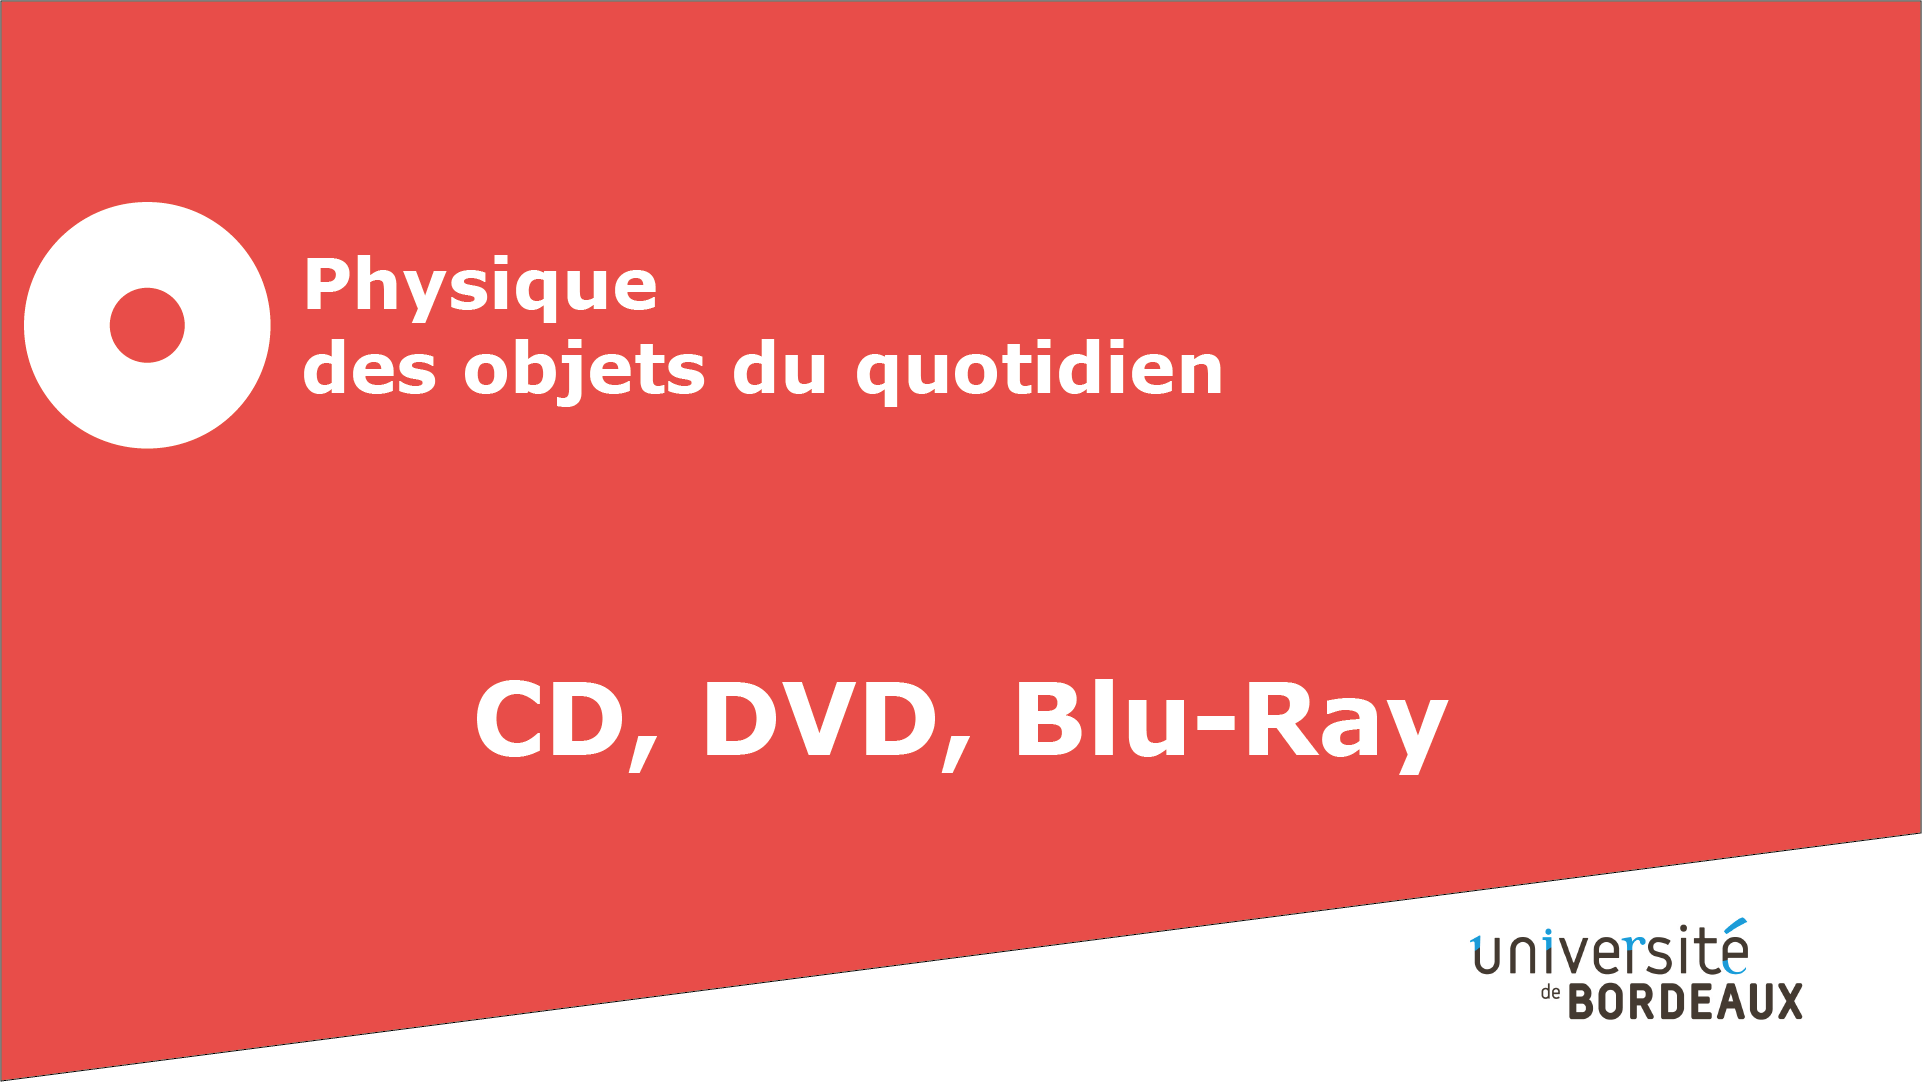 3 - CD, DVD, Blu-ray / L'origine de la diffraction